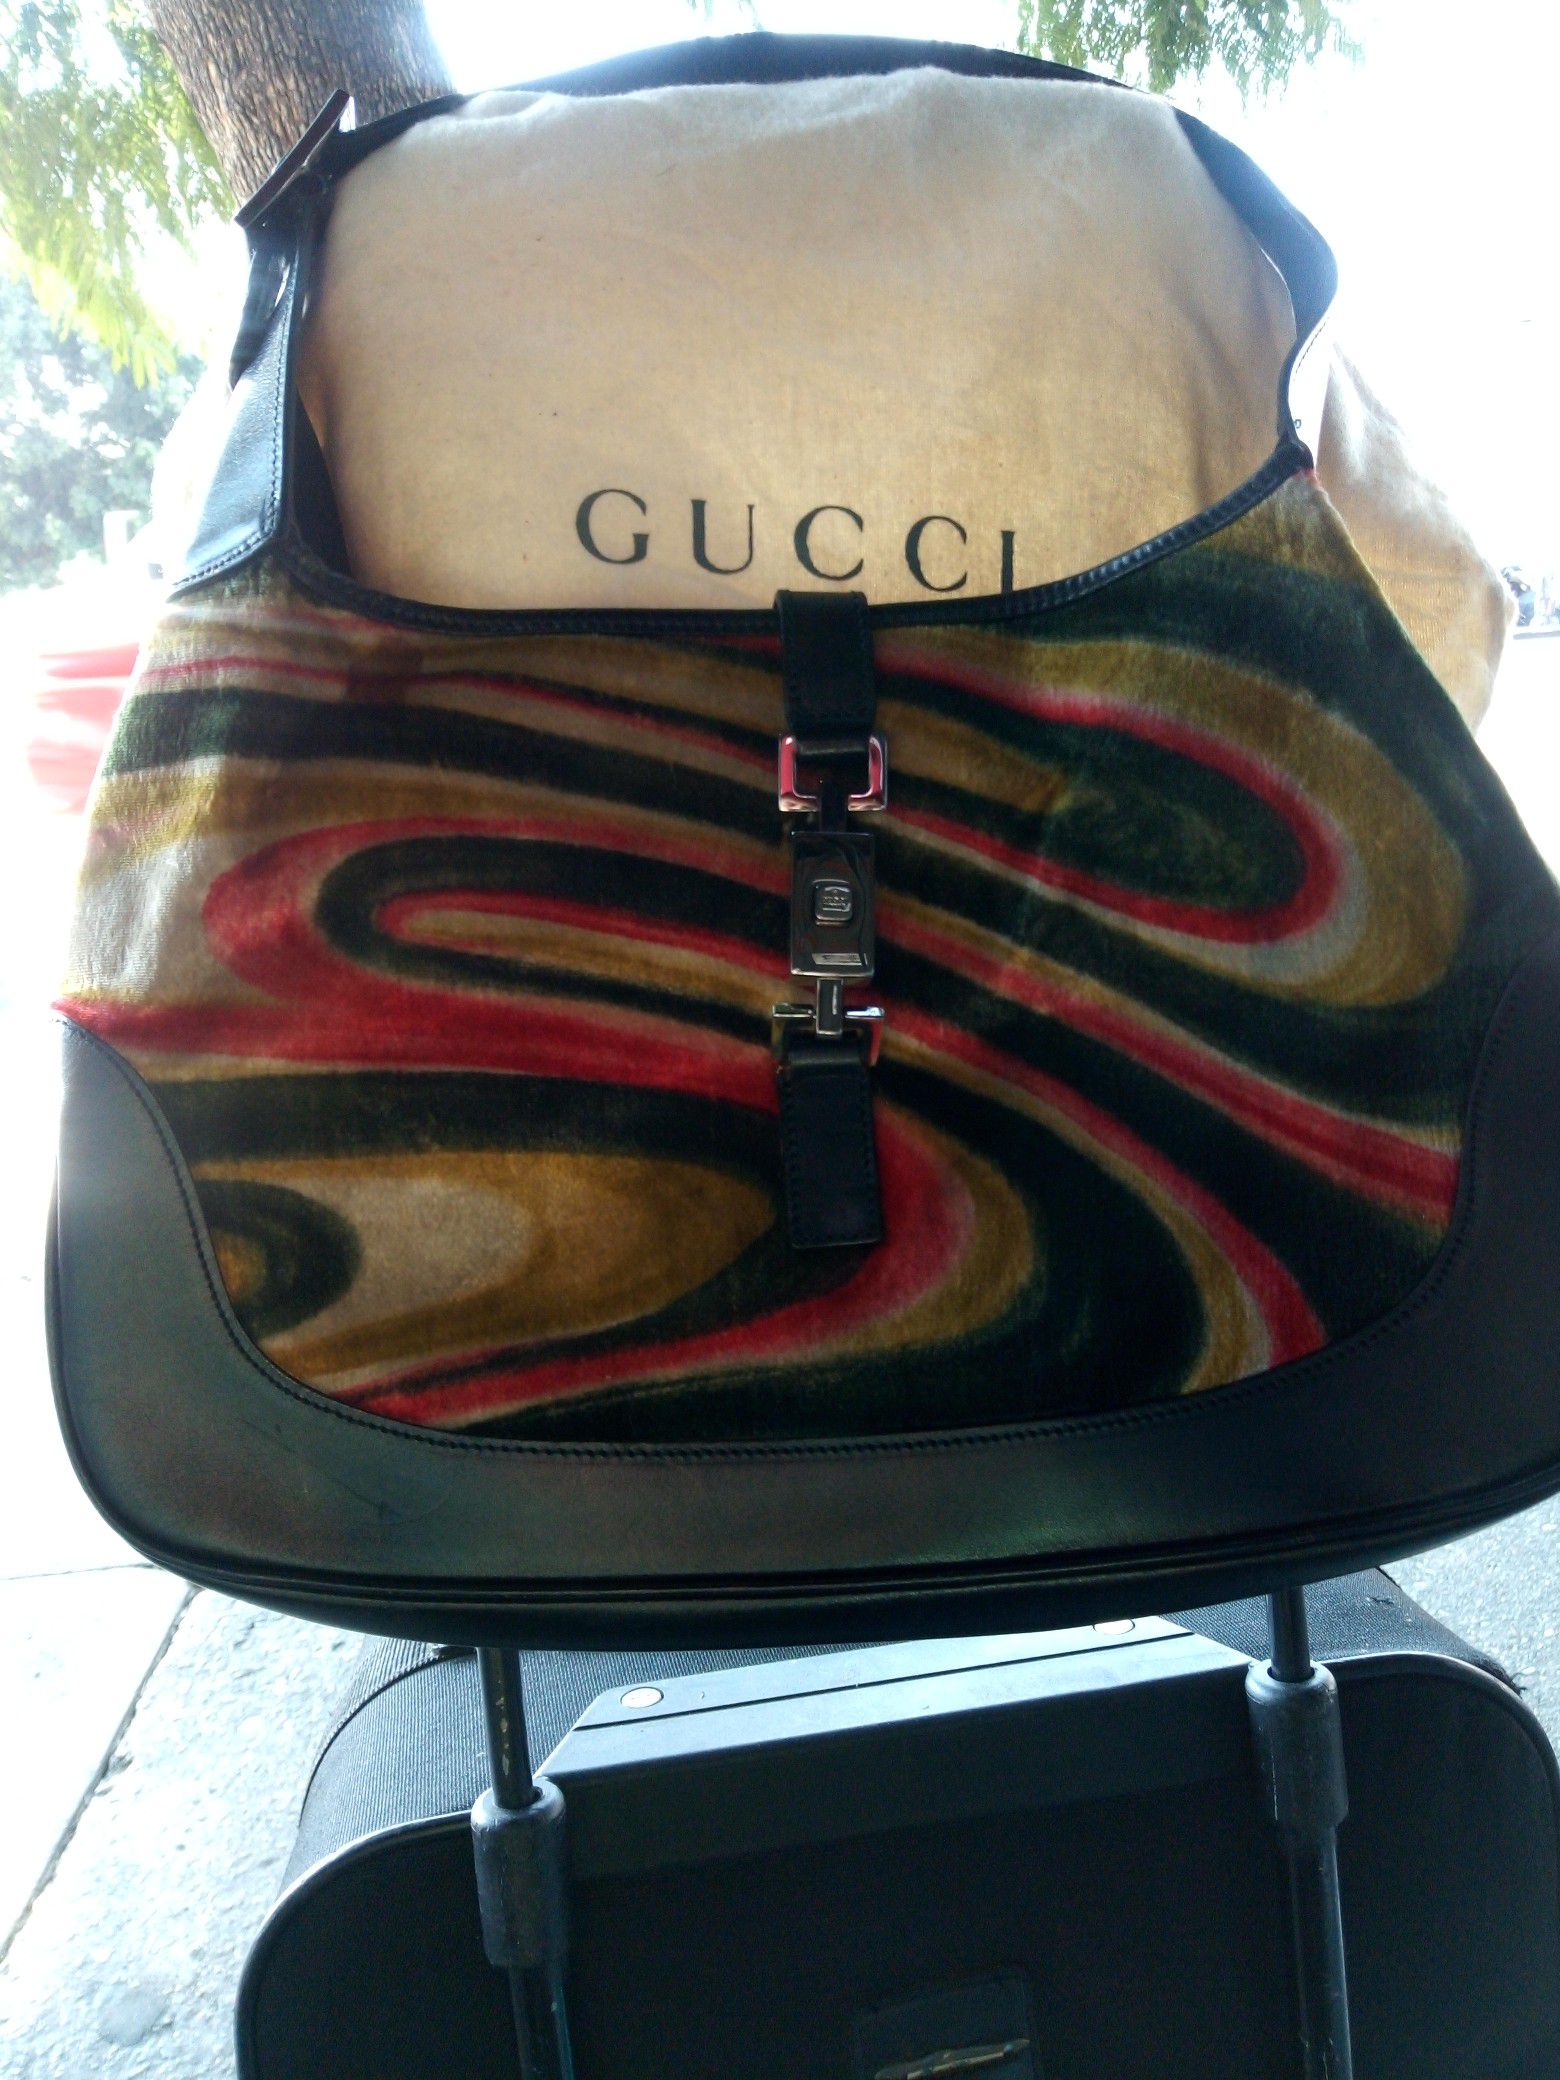 Gucci shoulder handbag